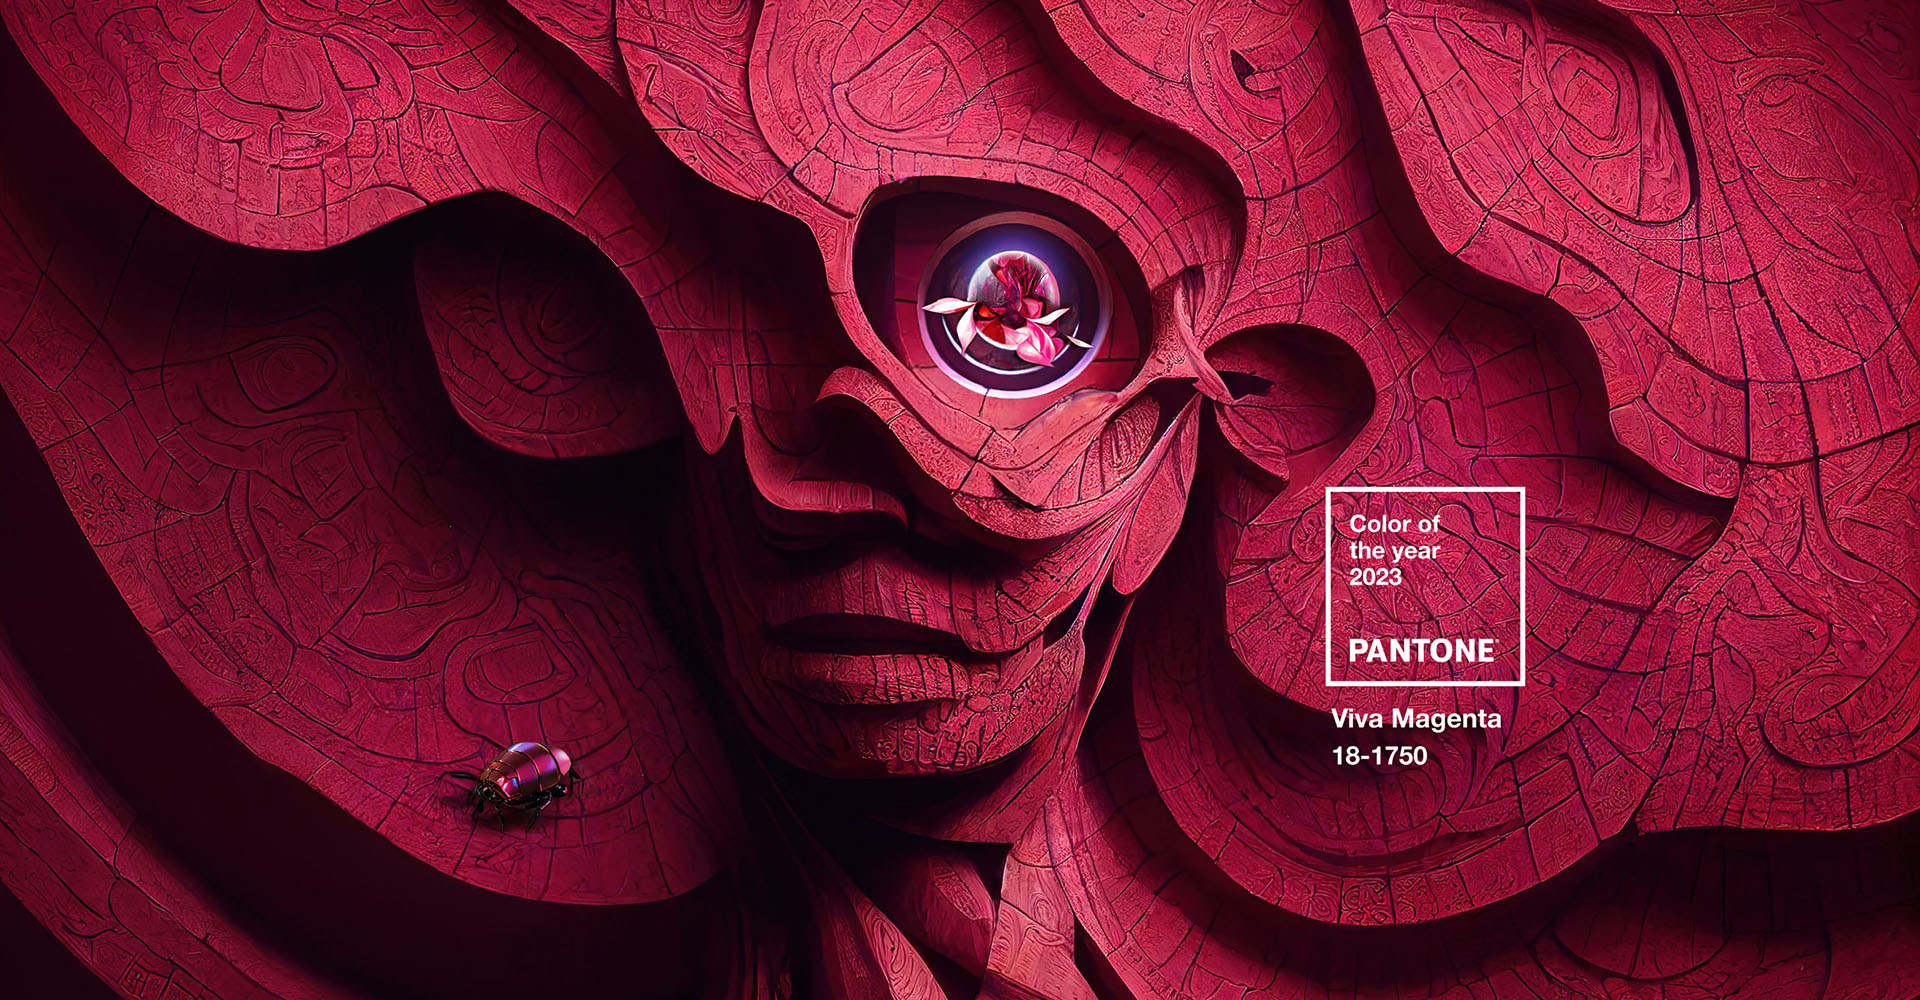 Новый тренд в дизайне - компания Pantone назвала цвет Viva Magenta оттенком года